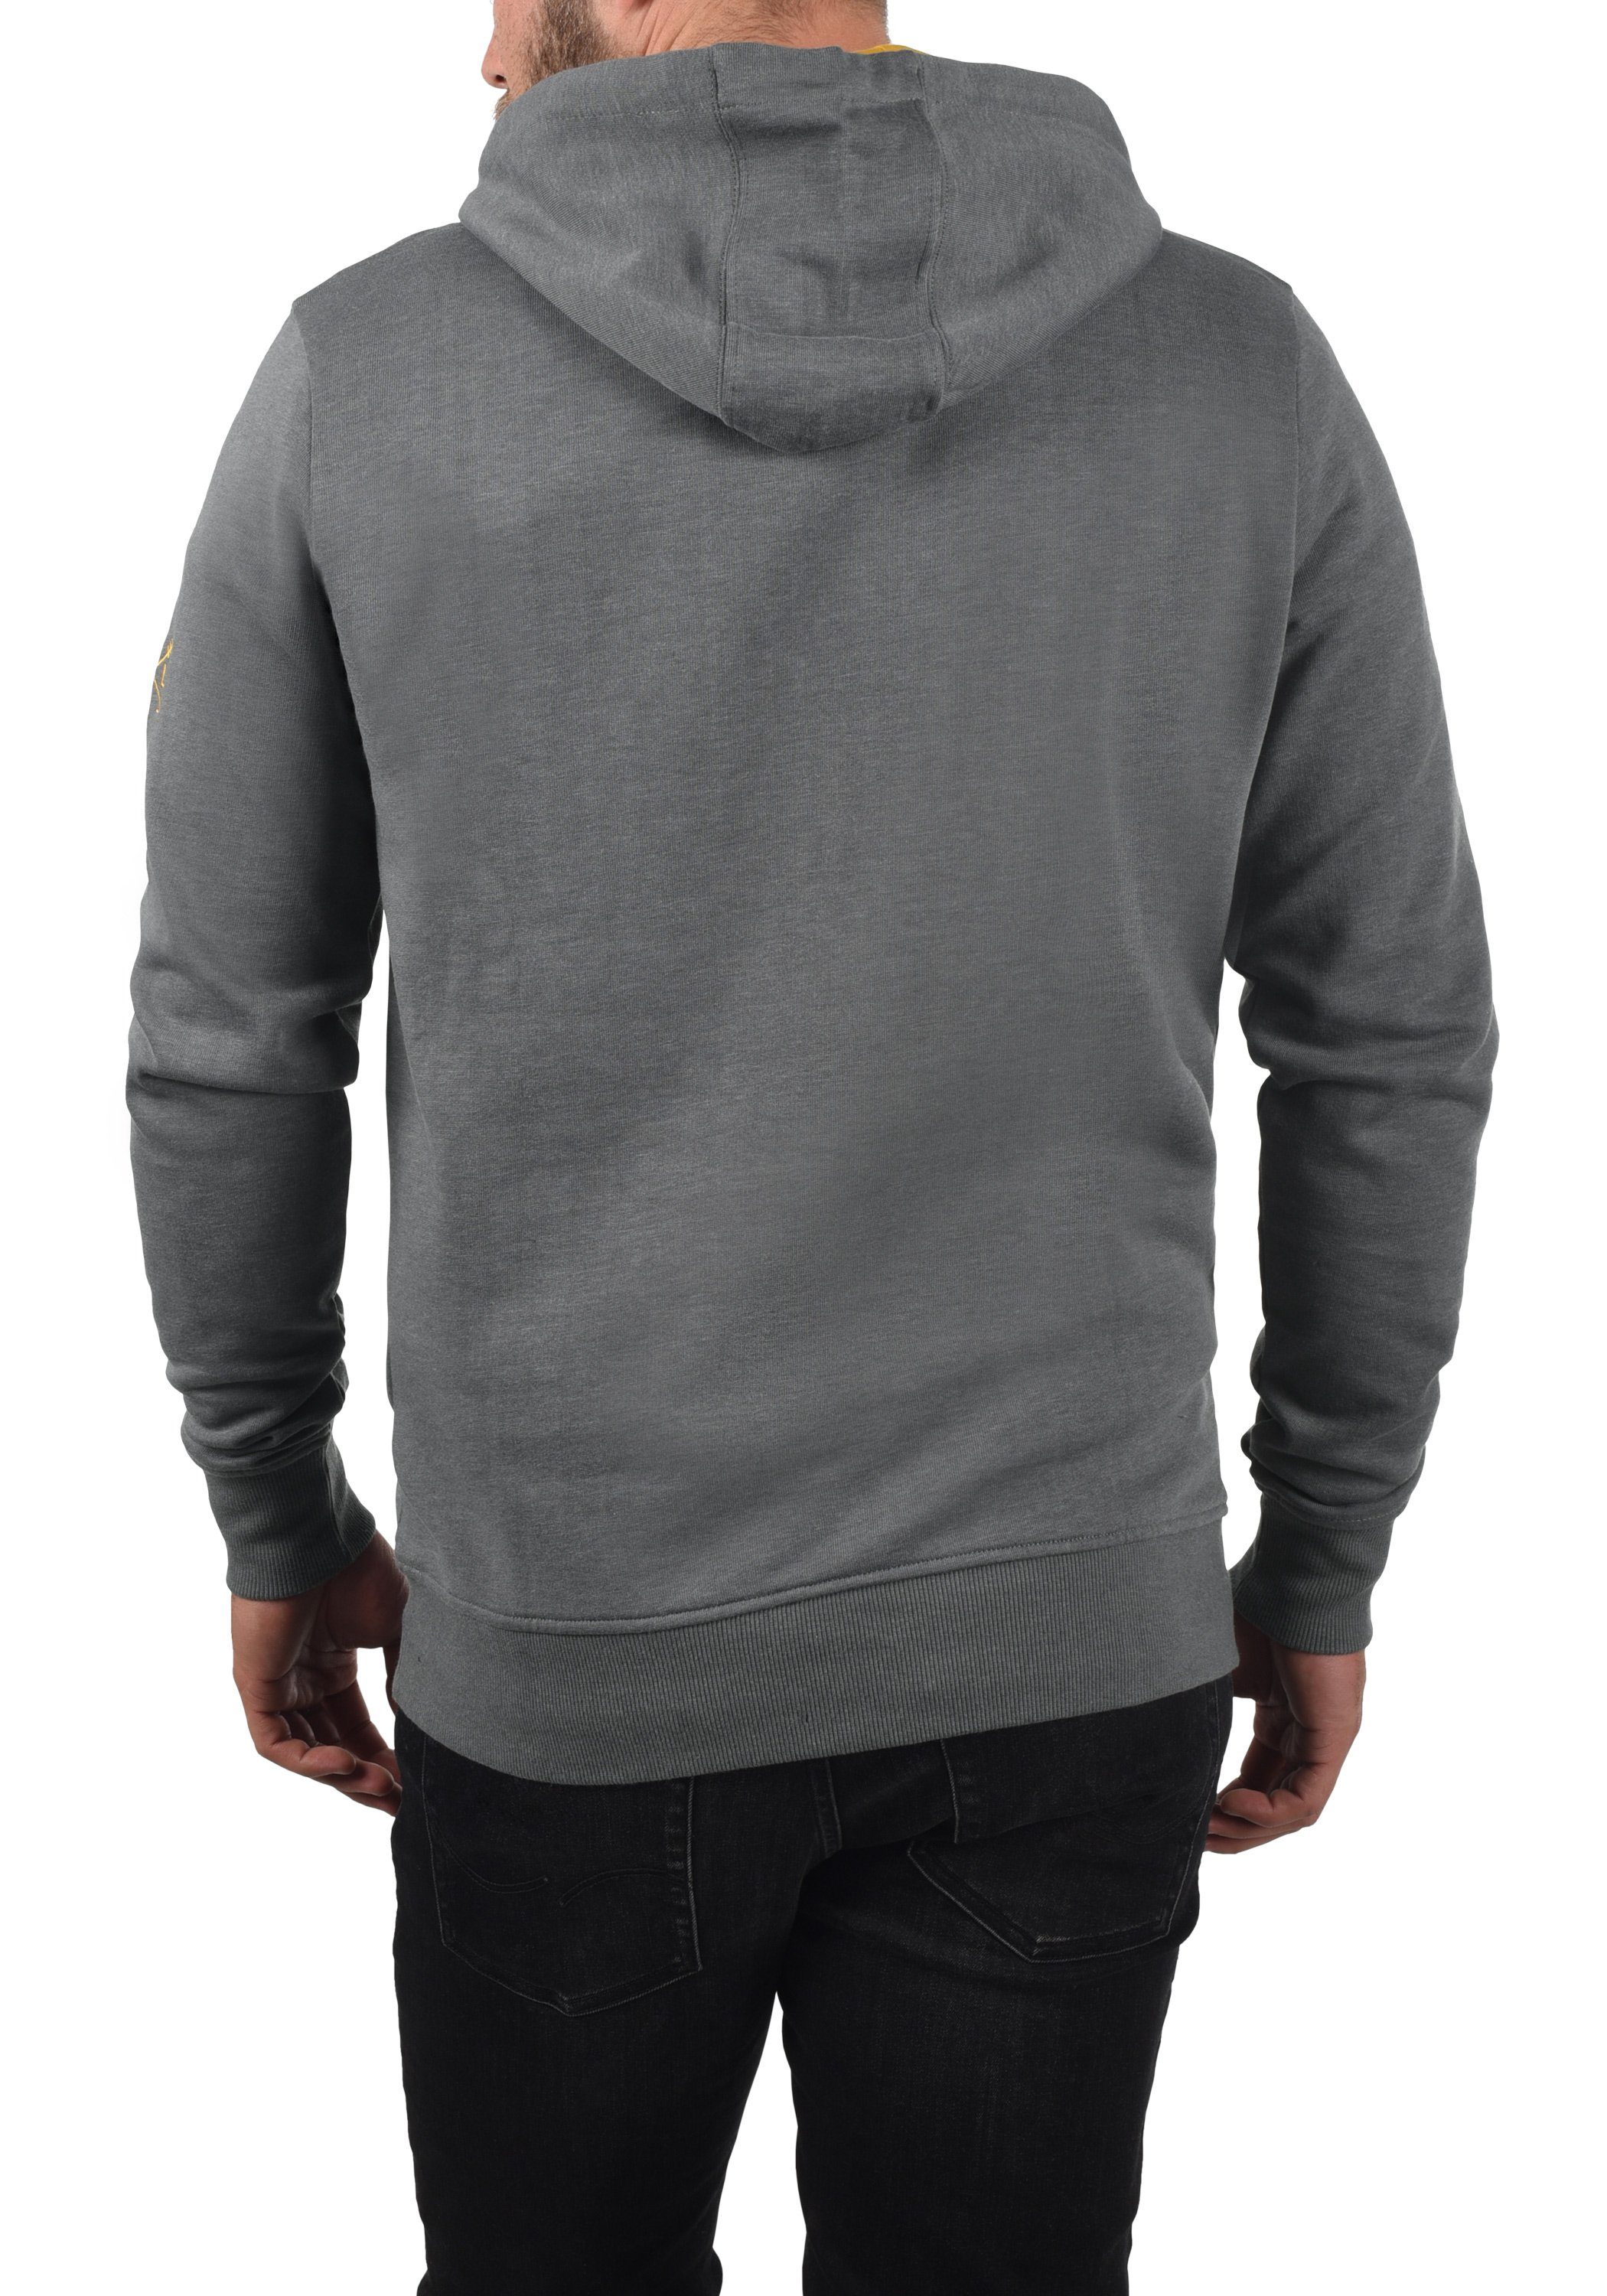 (1840051) kontrastreichen !Solid mit farblichen SDKenan Hoodie Grey Melange Kapuzensweatshirt Details